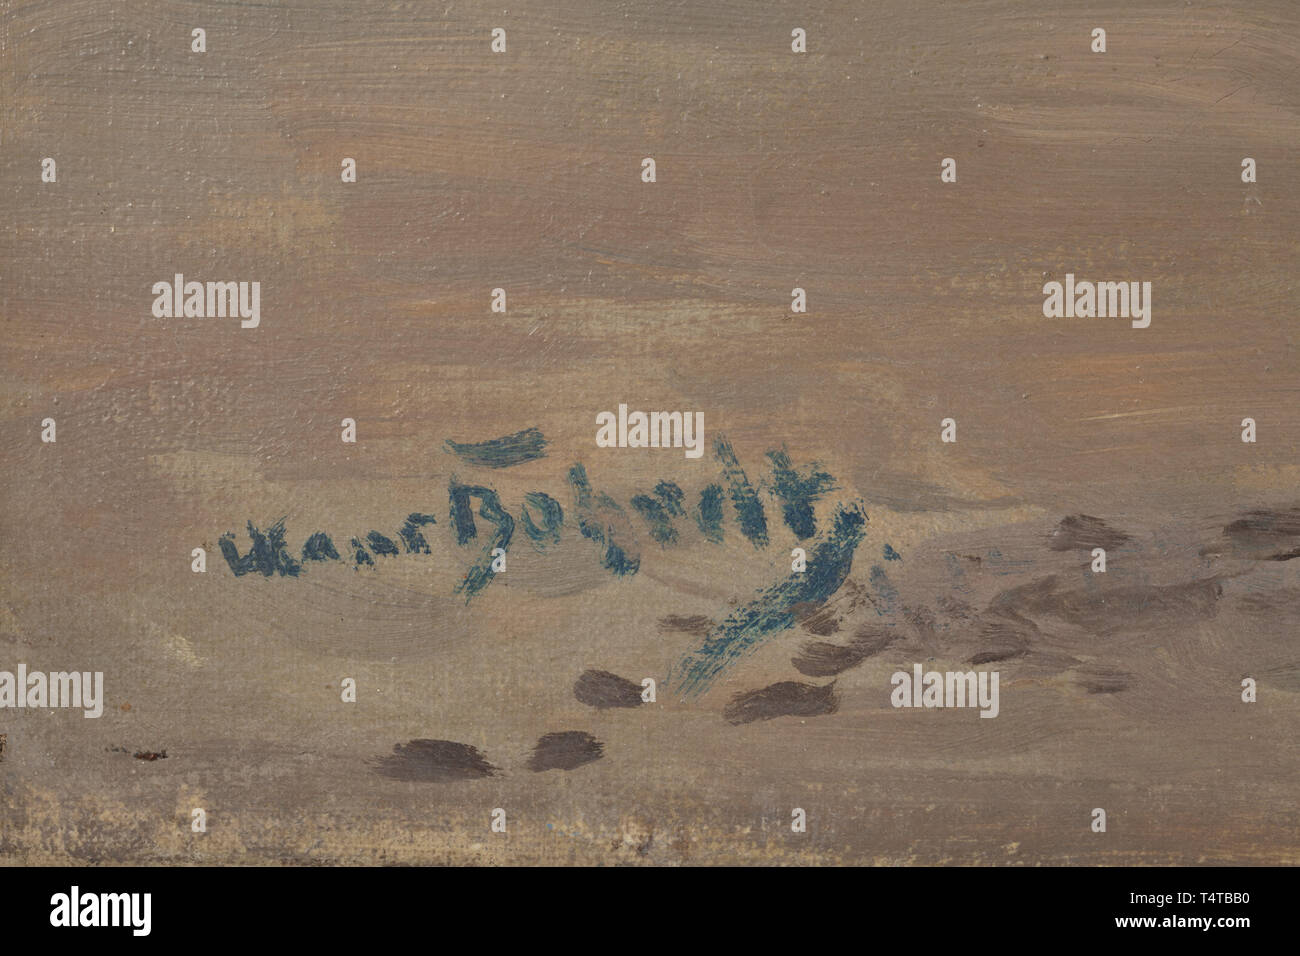 Johannes (Hans) Bohrdt (1857 - 1945) - Mar del Norte Breakers óleo sobre lienzo, firmado en la parte inferior izquierda Hans Bohrdt, sobre una camilla. Olas rompiendo en la playa bajo una cubierta irregular de las nubes con el sol brillando y reflejándose en el agua. Lienzo con reparaciones y desgarro (2 cm). Etiqueta con el nombre del artista, el título de la pintura y otros detalles en el reverso. Dimensiones totales de 101 x 71 cm. Las obras del famoso pintor alemán del Norte Profesor Johannes Bohrdt, quien tenía una preferencia por motivos marítimos, se muestran, entre otros, en las grandes exposiciones de arte alemán, sólo Editorial-Use Foto de stock